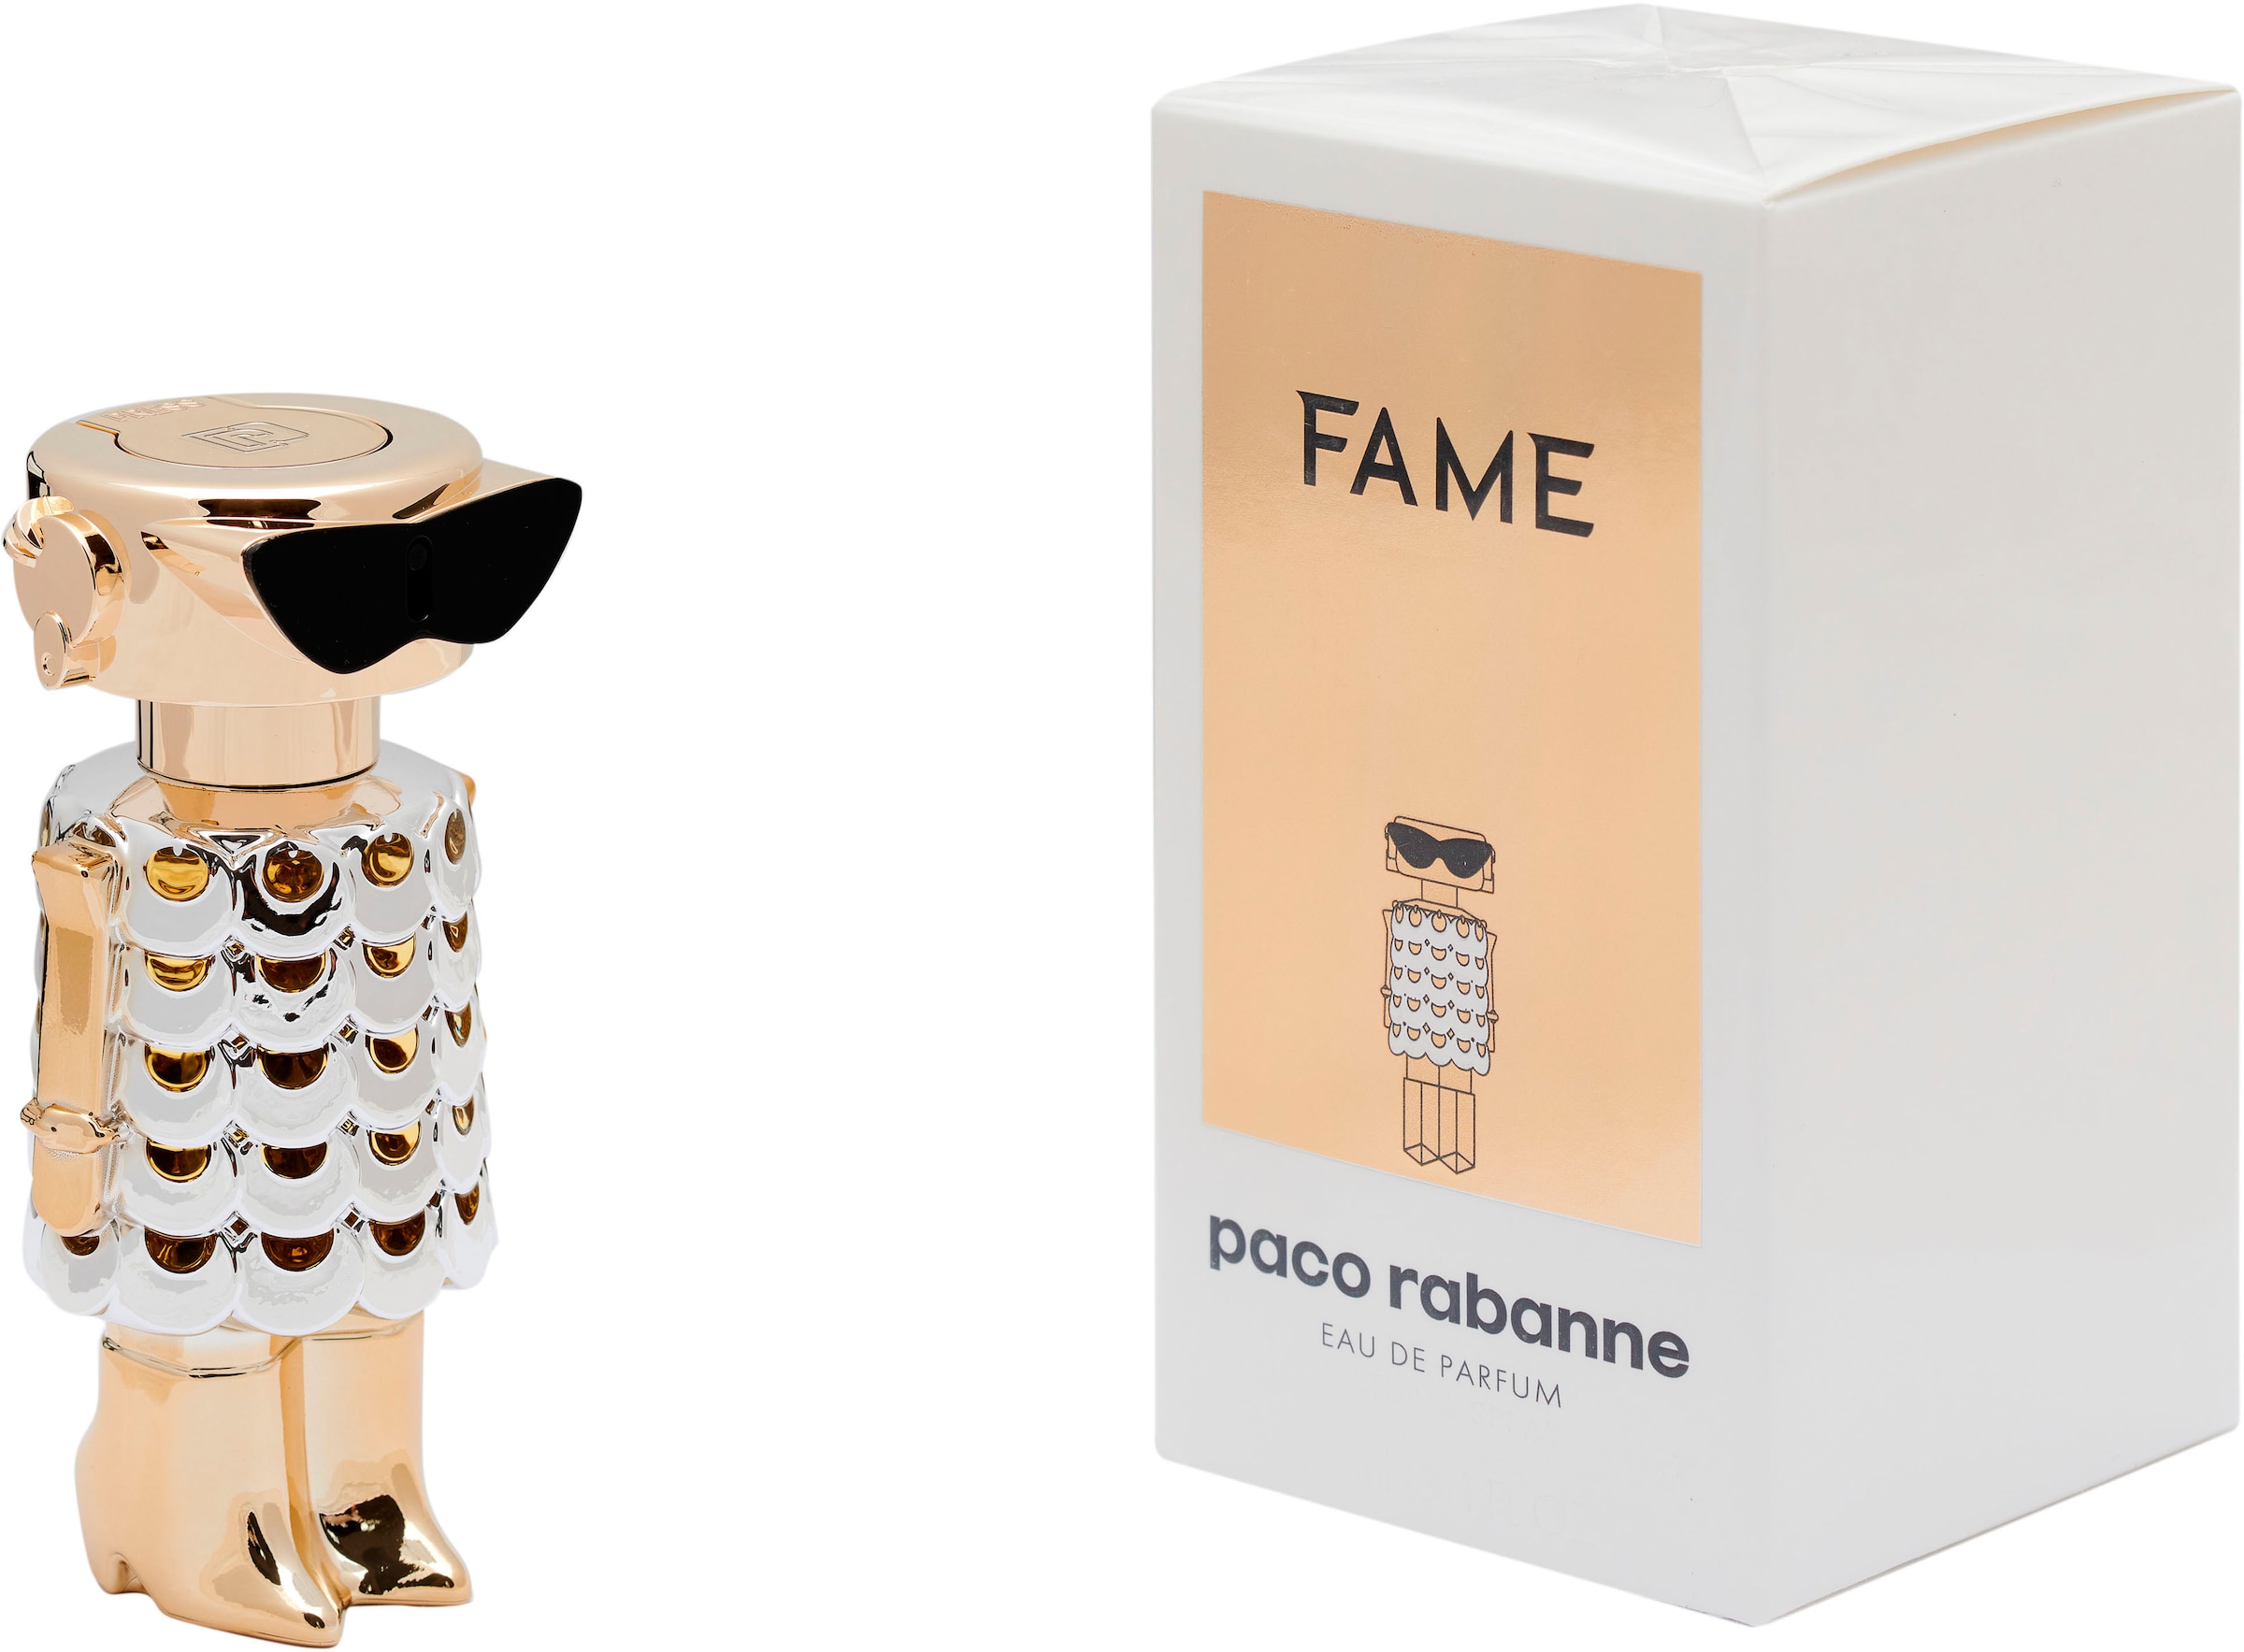 paco rabanne Eau de Parfum »Fame«